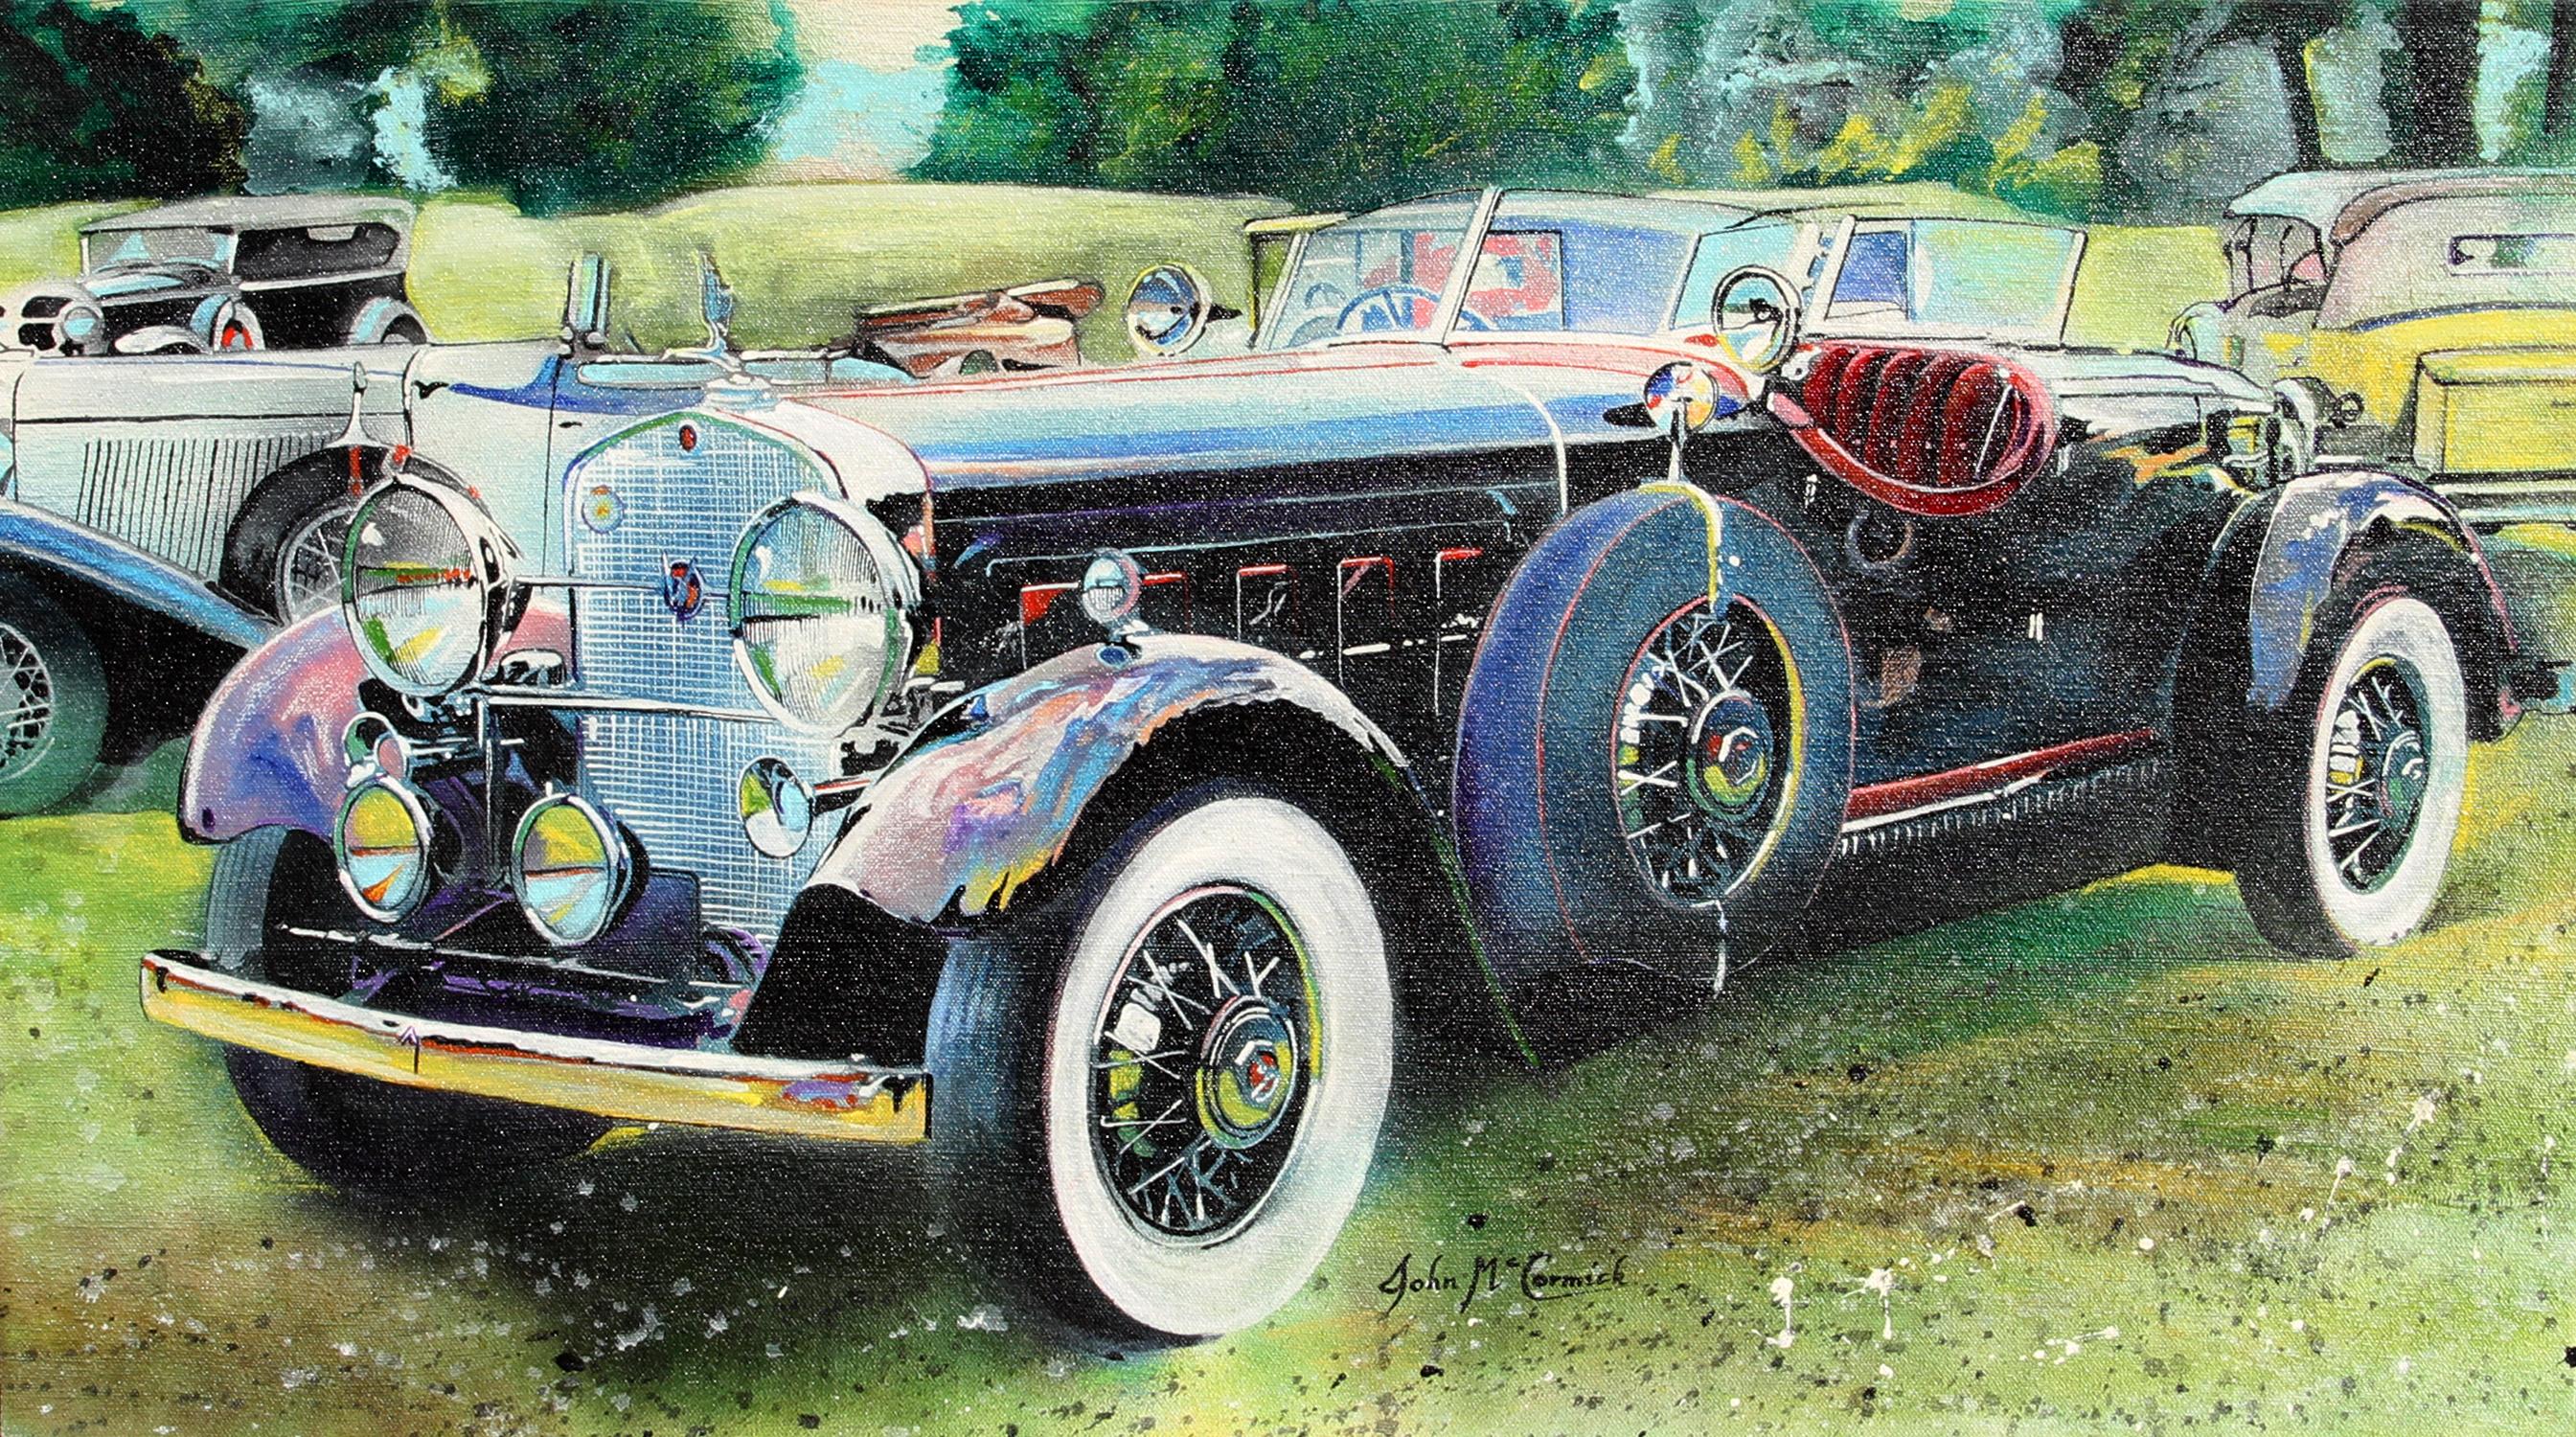 Artiste : John McCormick, américain
Titre : Rolls Royce
Année : 1983
Médium : Huile sur toile
Taille : 18 in. x 32 in. (45,72 cm x 81,28 cm)
